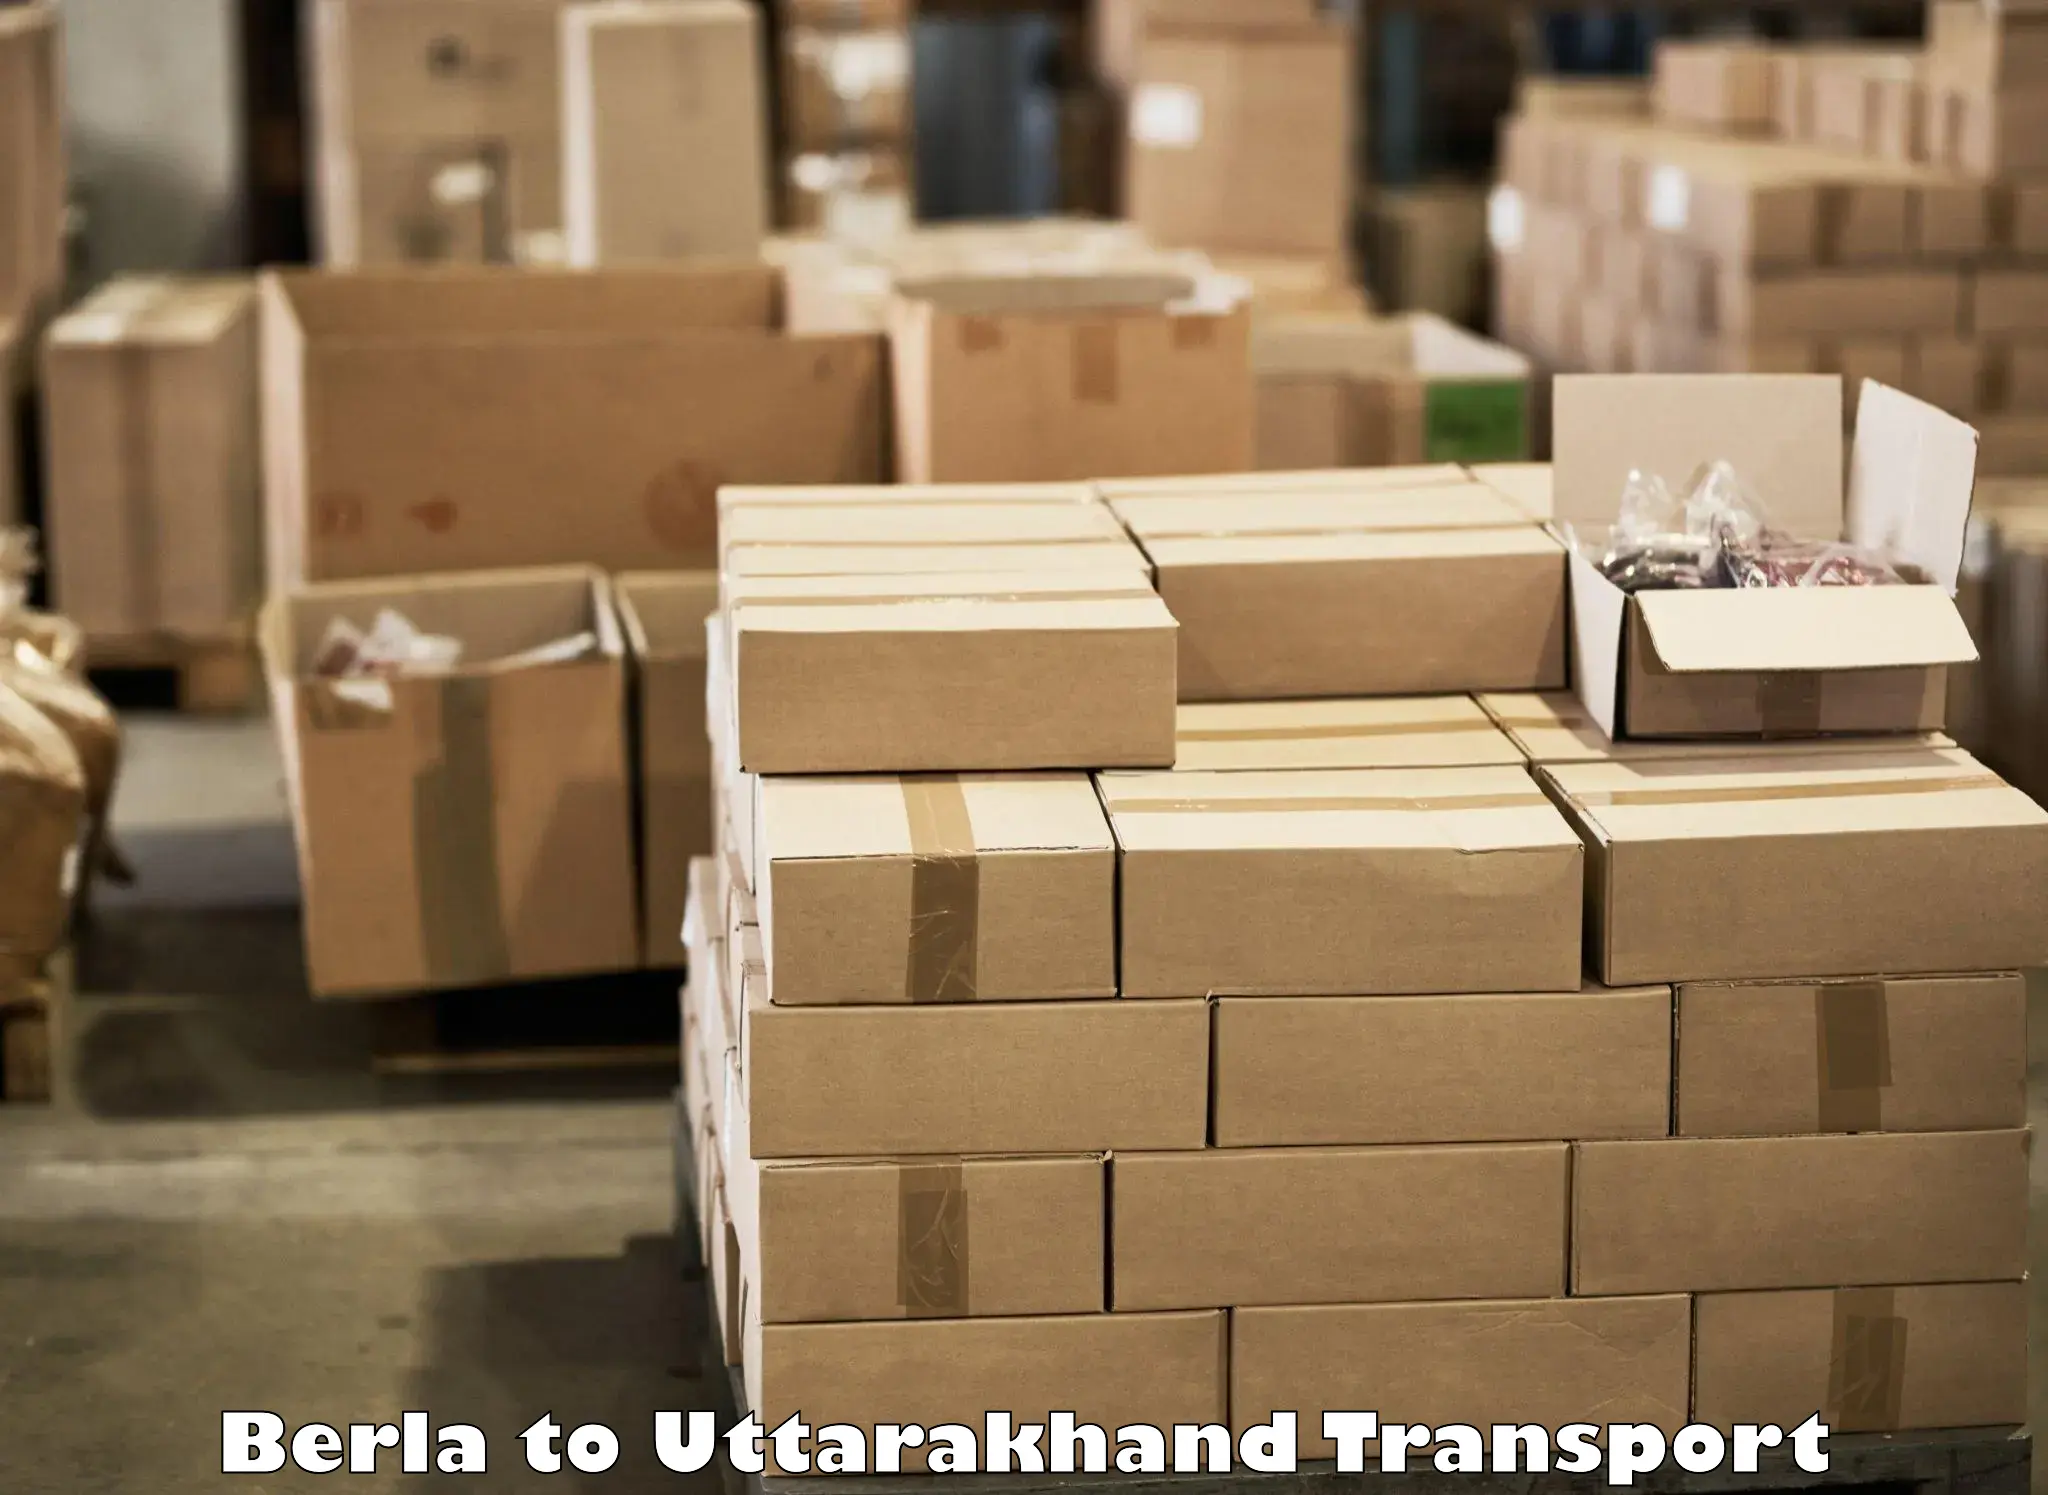 Transport in sharing Berla to IIT Roorkee